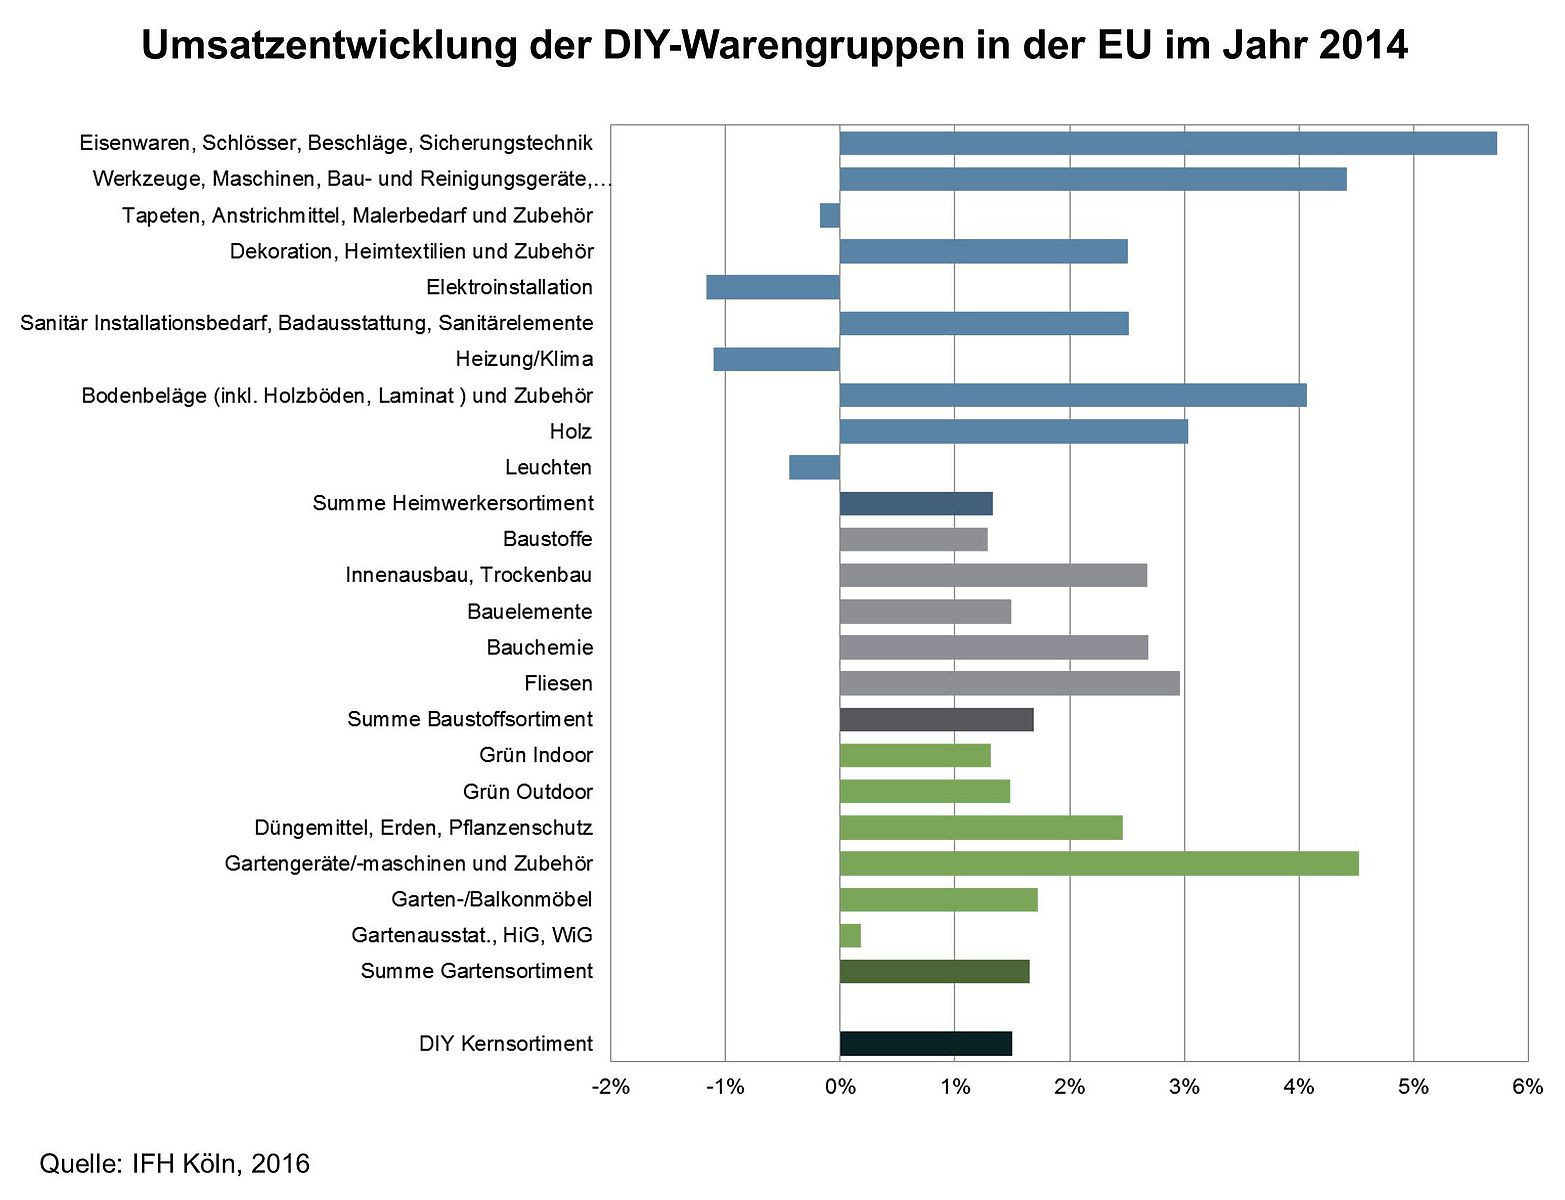 Diy Markt
 DIY Markt in der EU 2014 vorherrschend positive Entwicklung